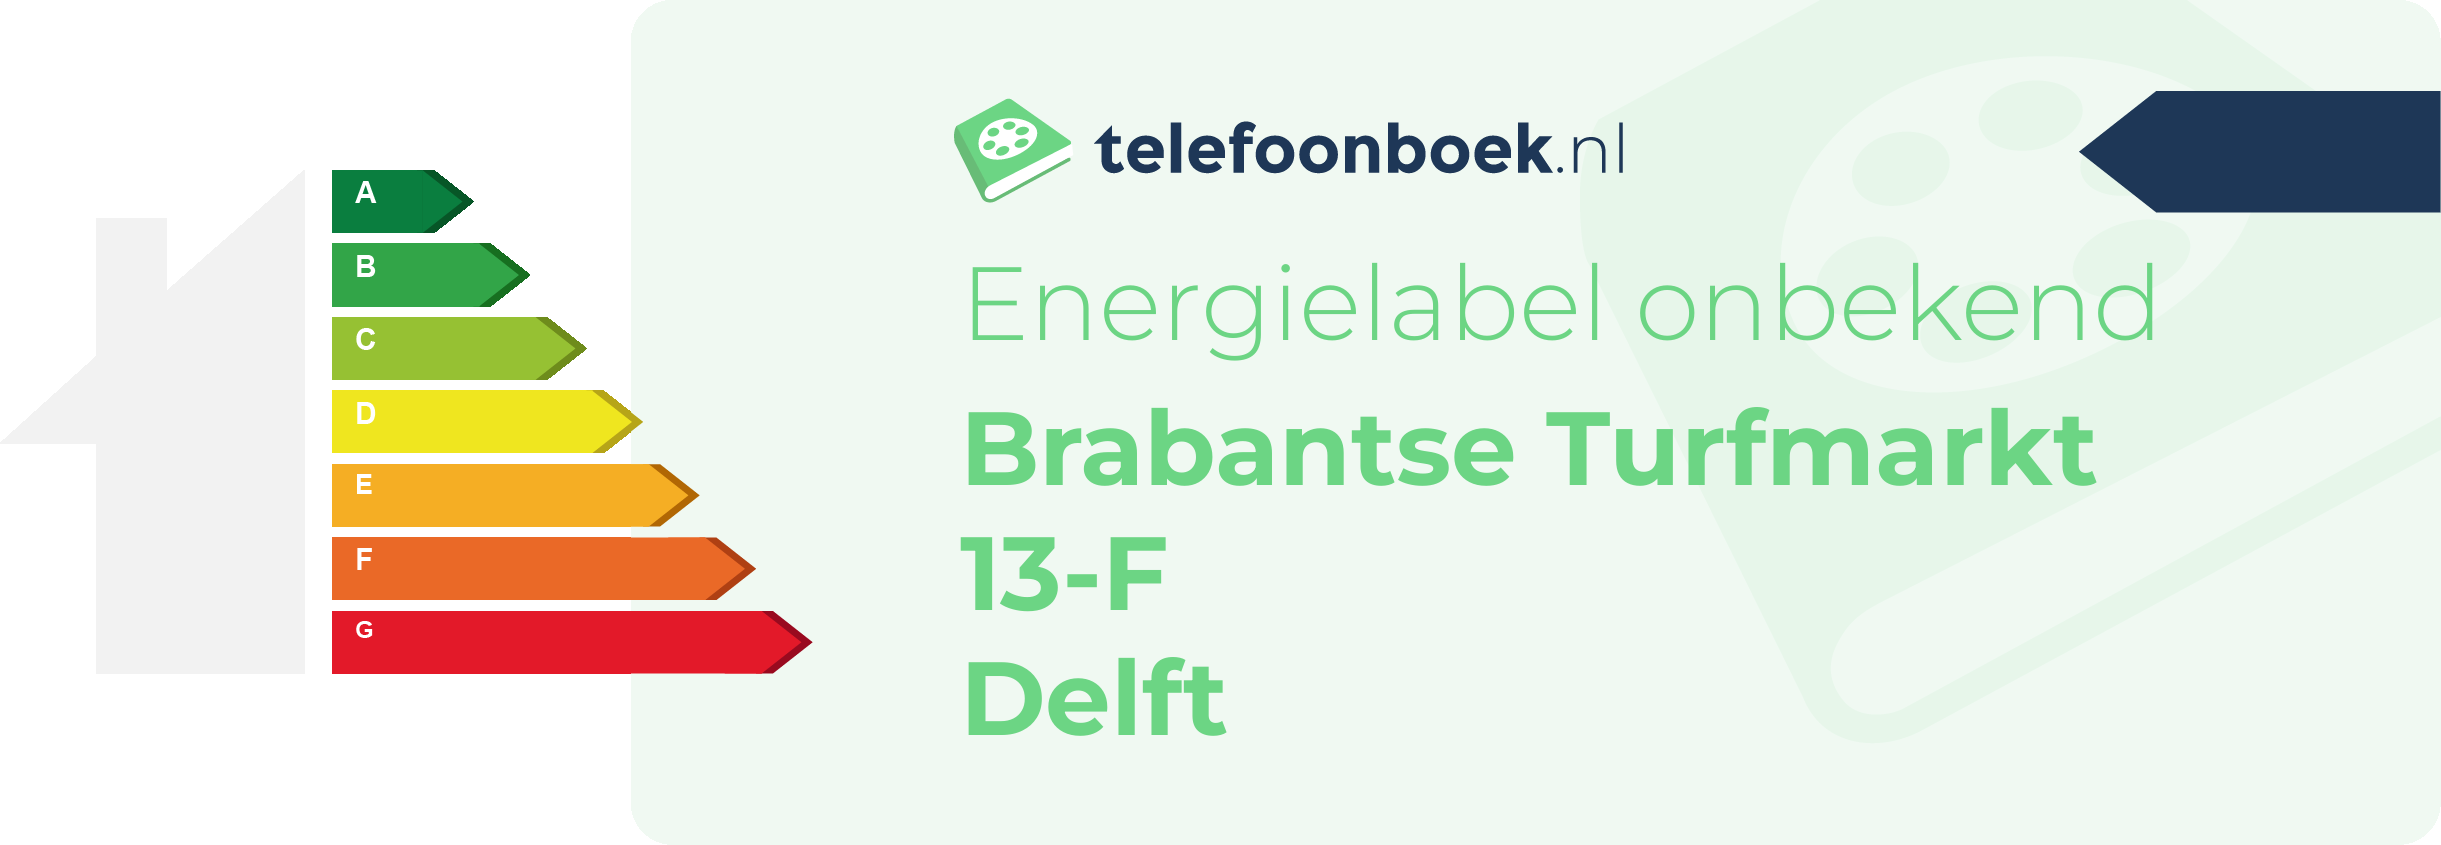 Energielabel Brabantse Turfmarkt 13-F Delft